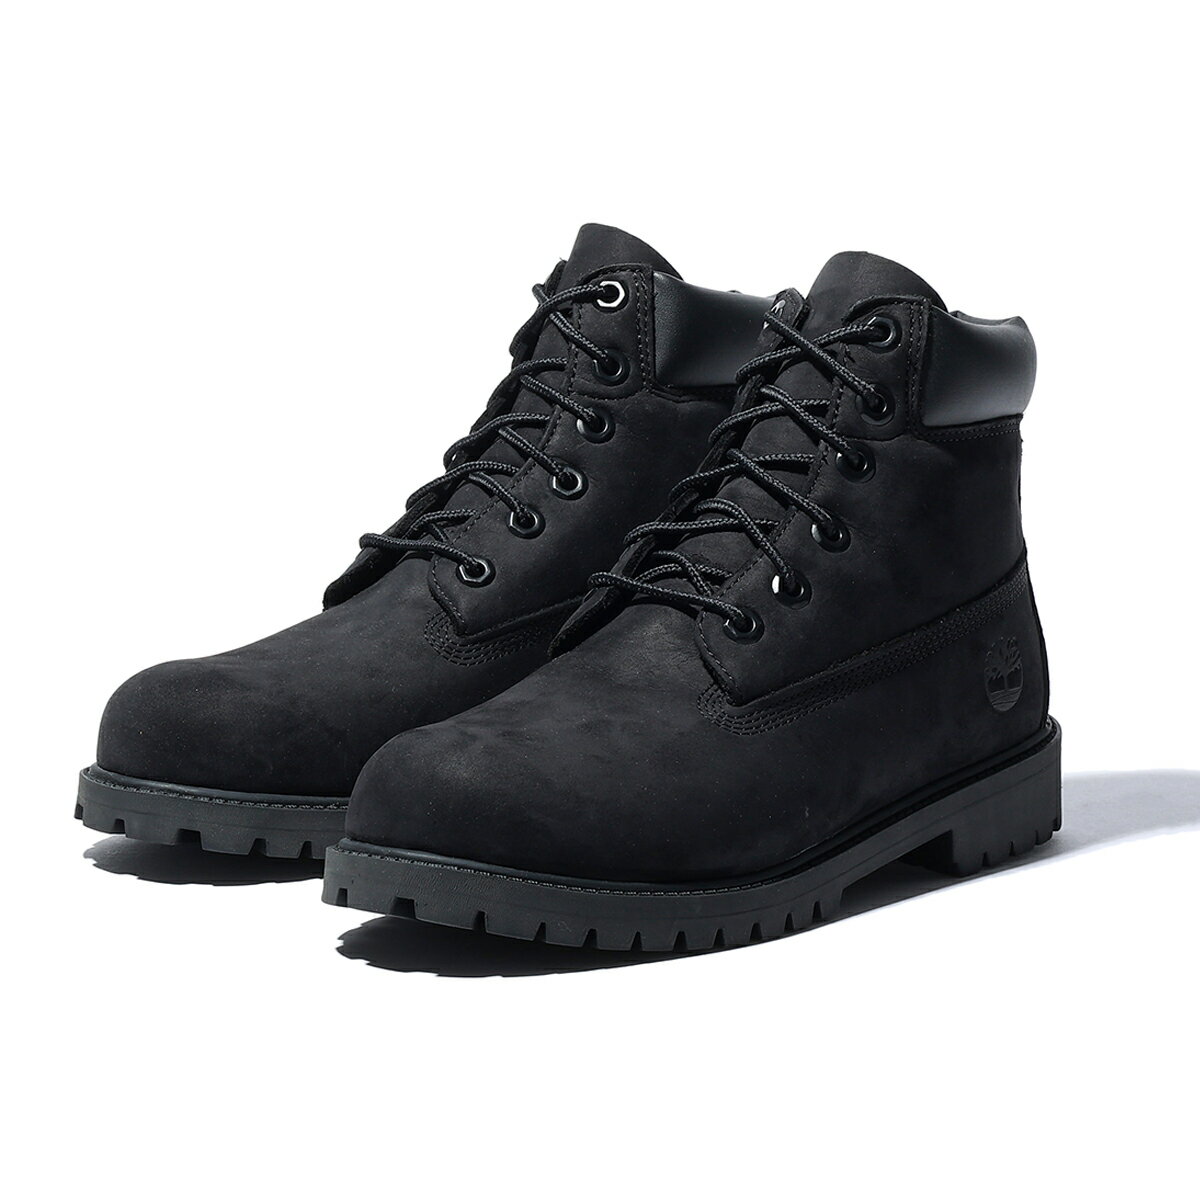 ティンバーランド Timberland 6Inch Premium WaterProof Boots(Black Nubuck)(ティンバーランド 6インチ プレミアム ウォータープルーフ ブーツ)【レディース ジュニア】【ブーツ 定番 防水 アウトドア】【24SS】